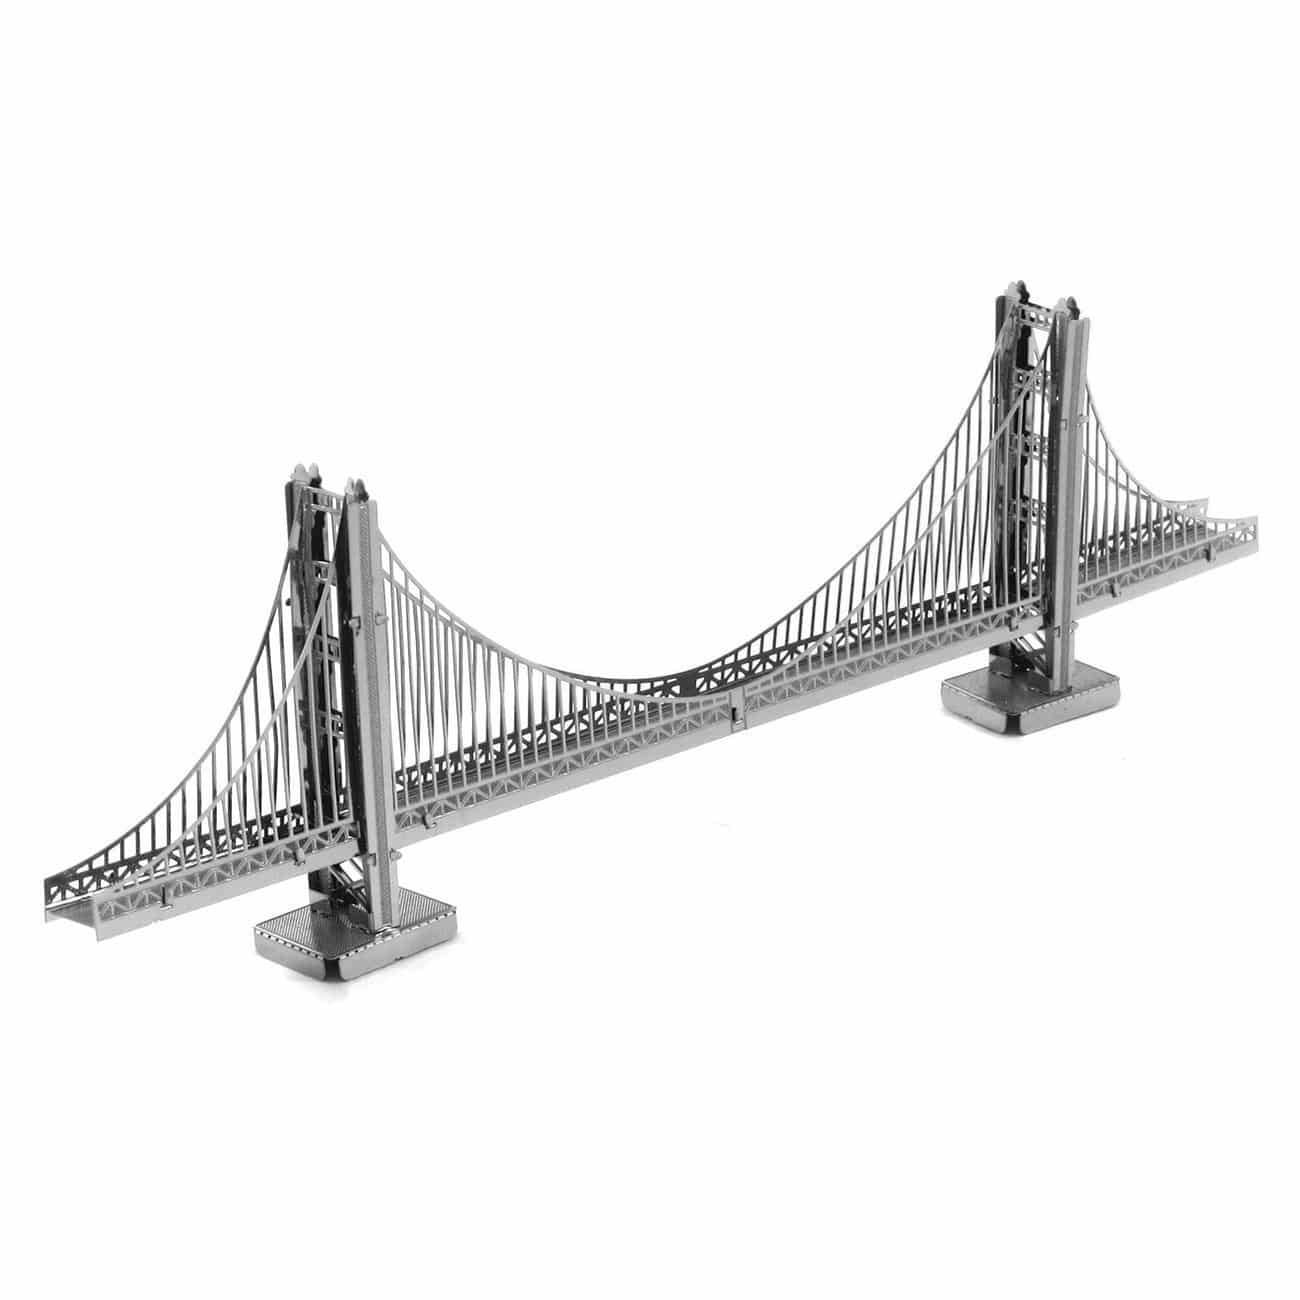 Tweezer  013016 Metal Earth Golden Gate Bridge Rare Ver 3D Metal  Model 